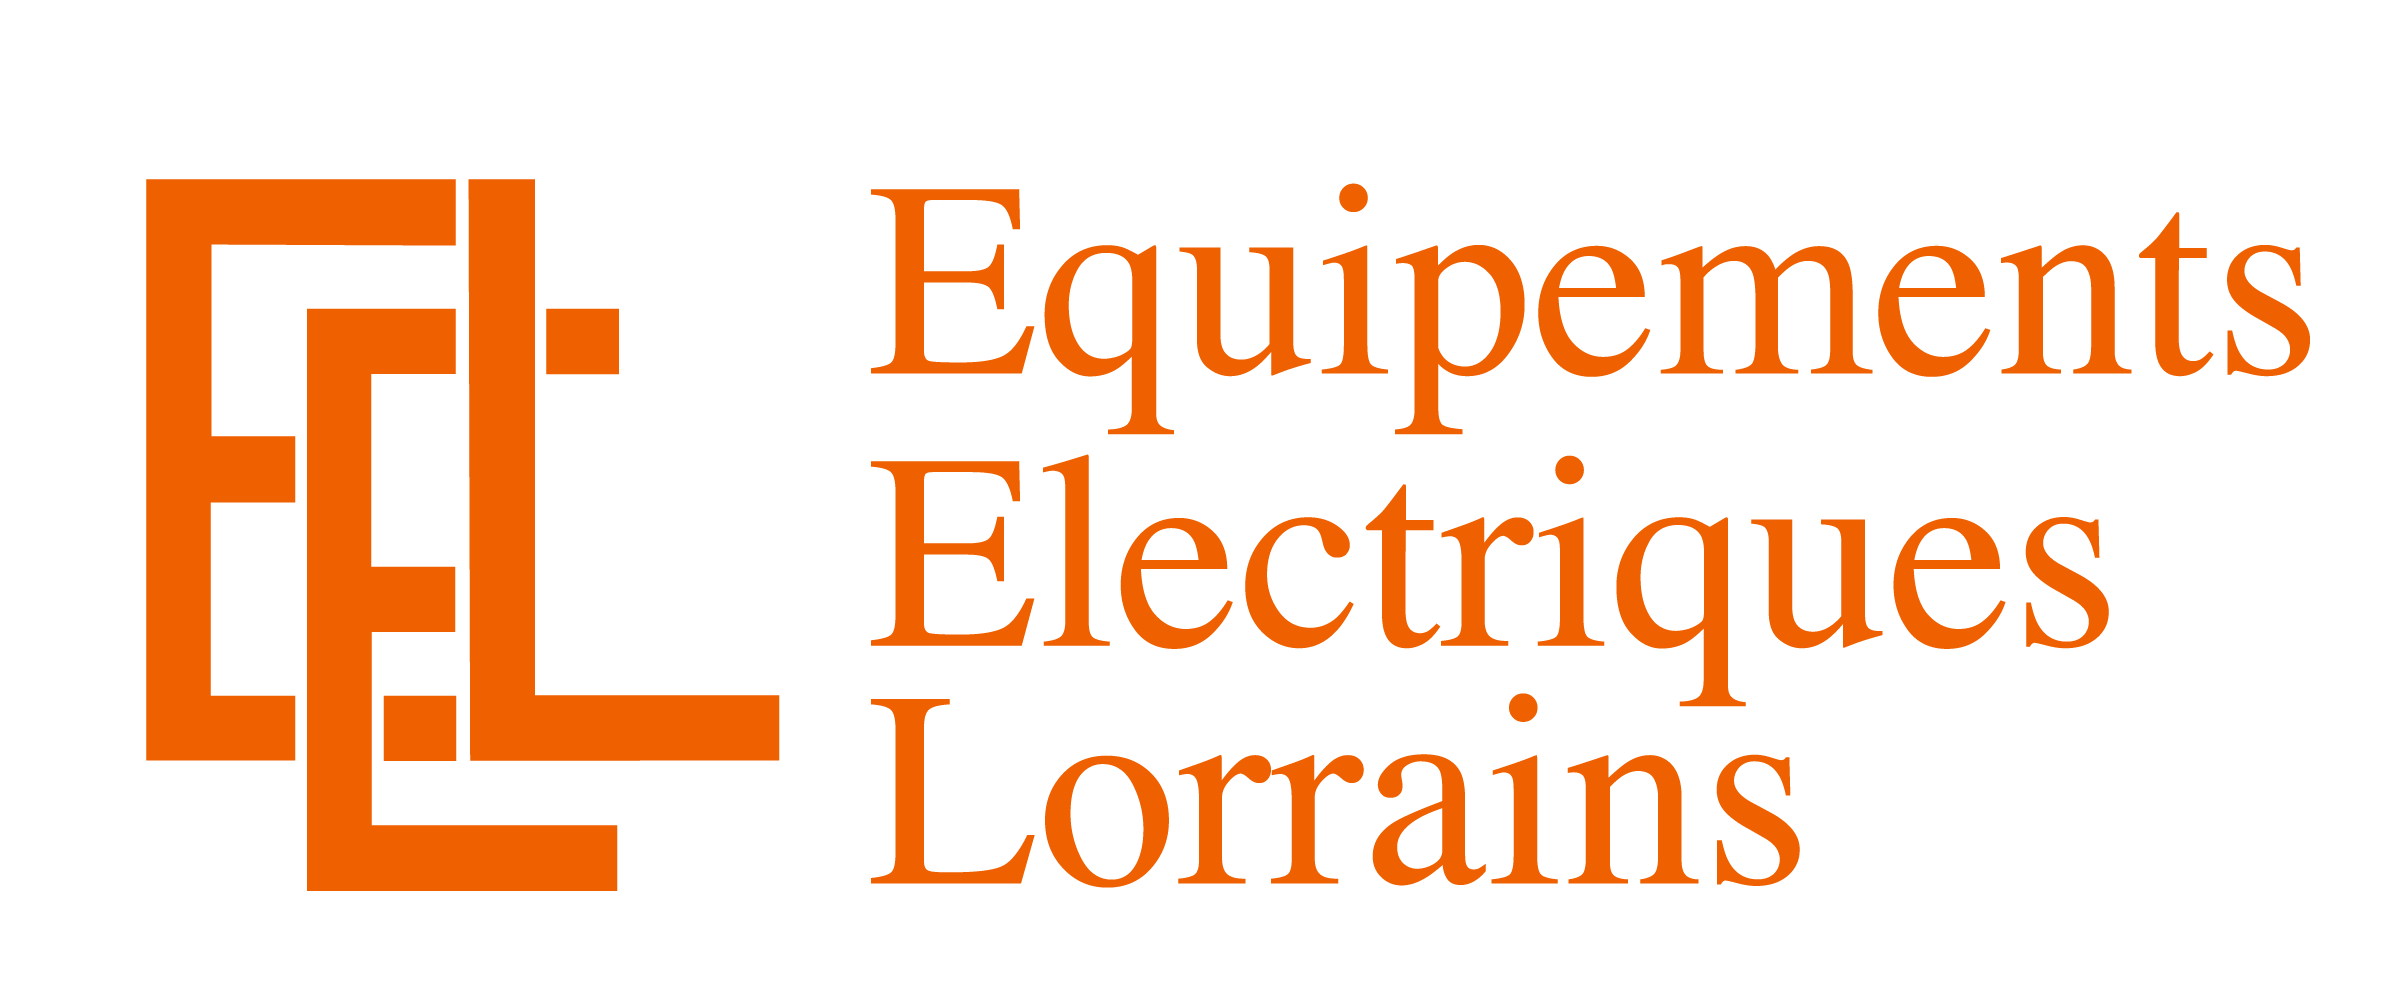 Equipements Electriques Lorrain